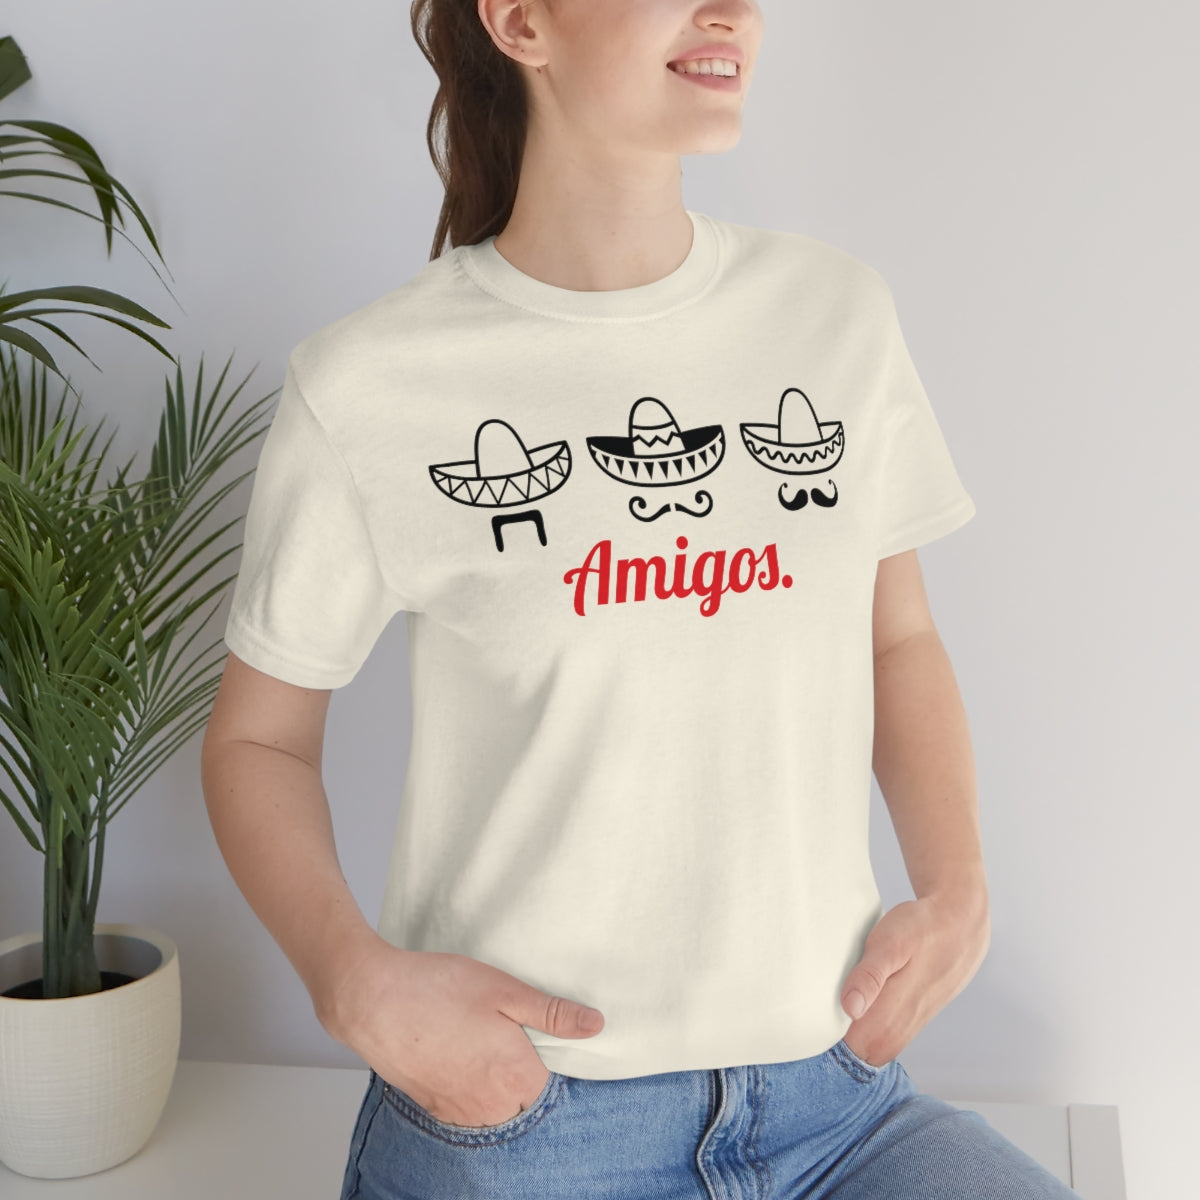 Three Amigos T-shirt